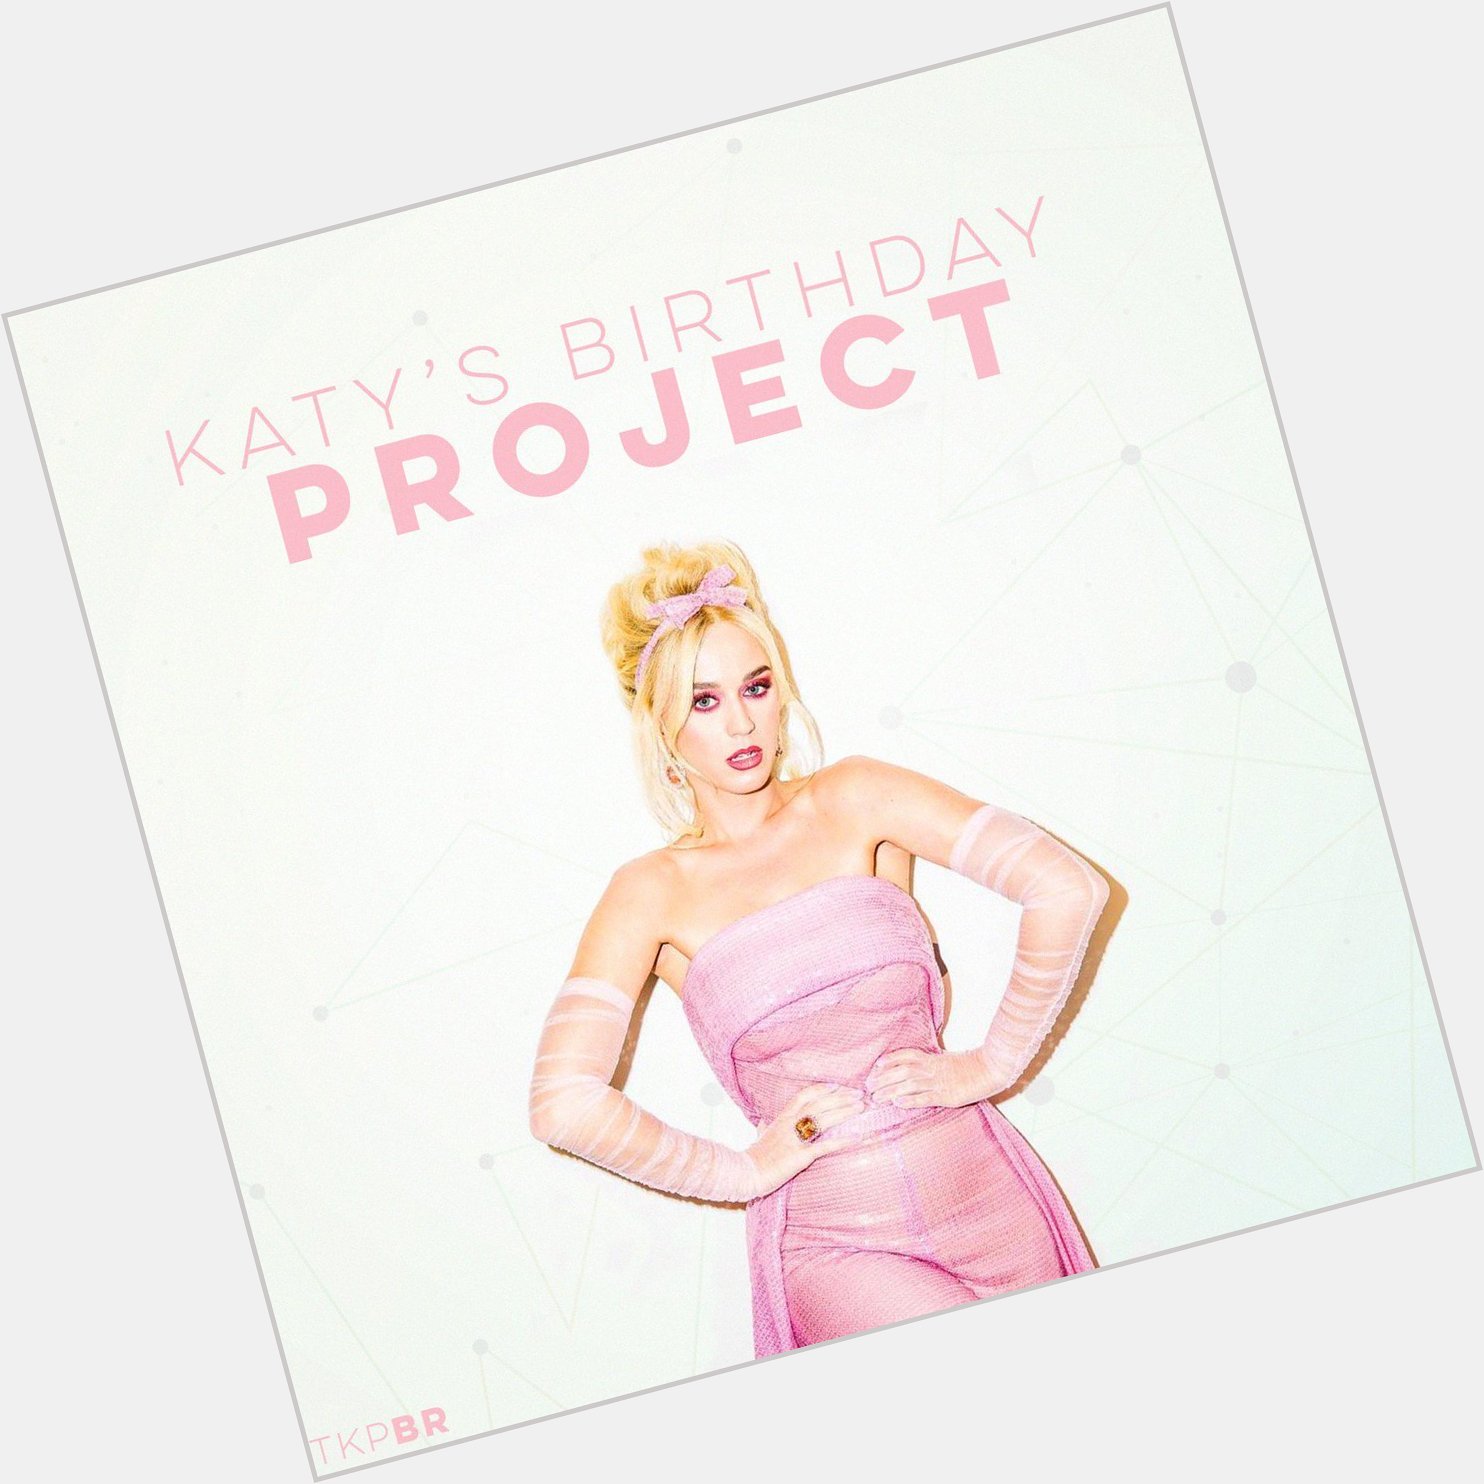 Participe do projeto Happy Birthday Katy Perry:  